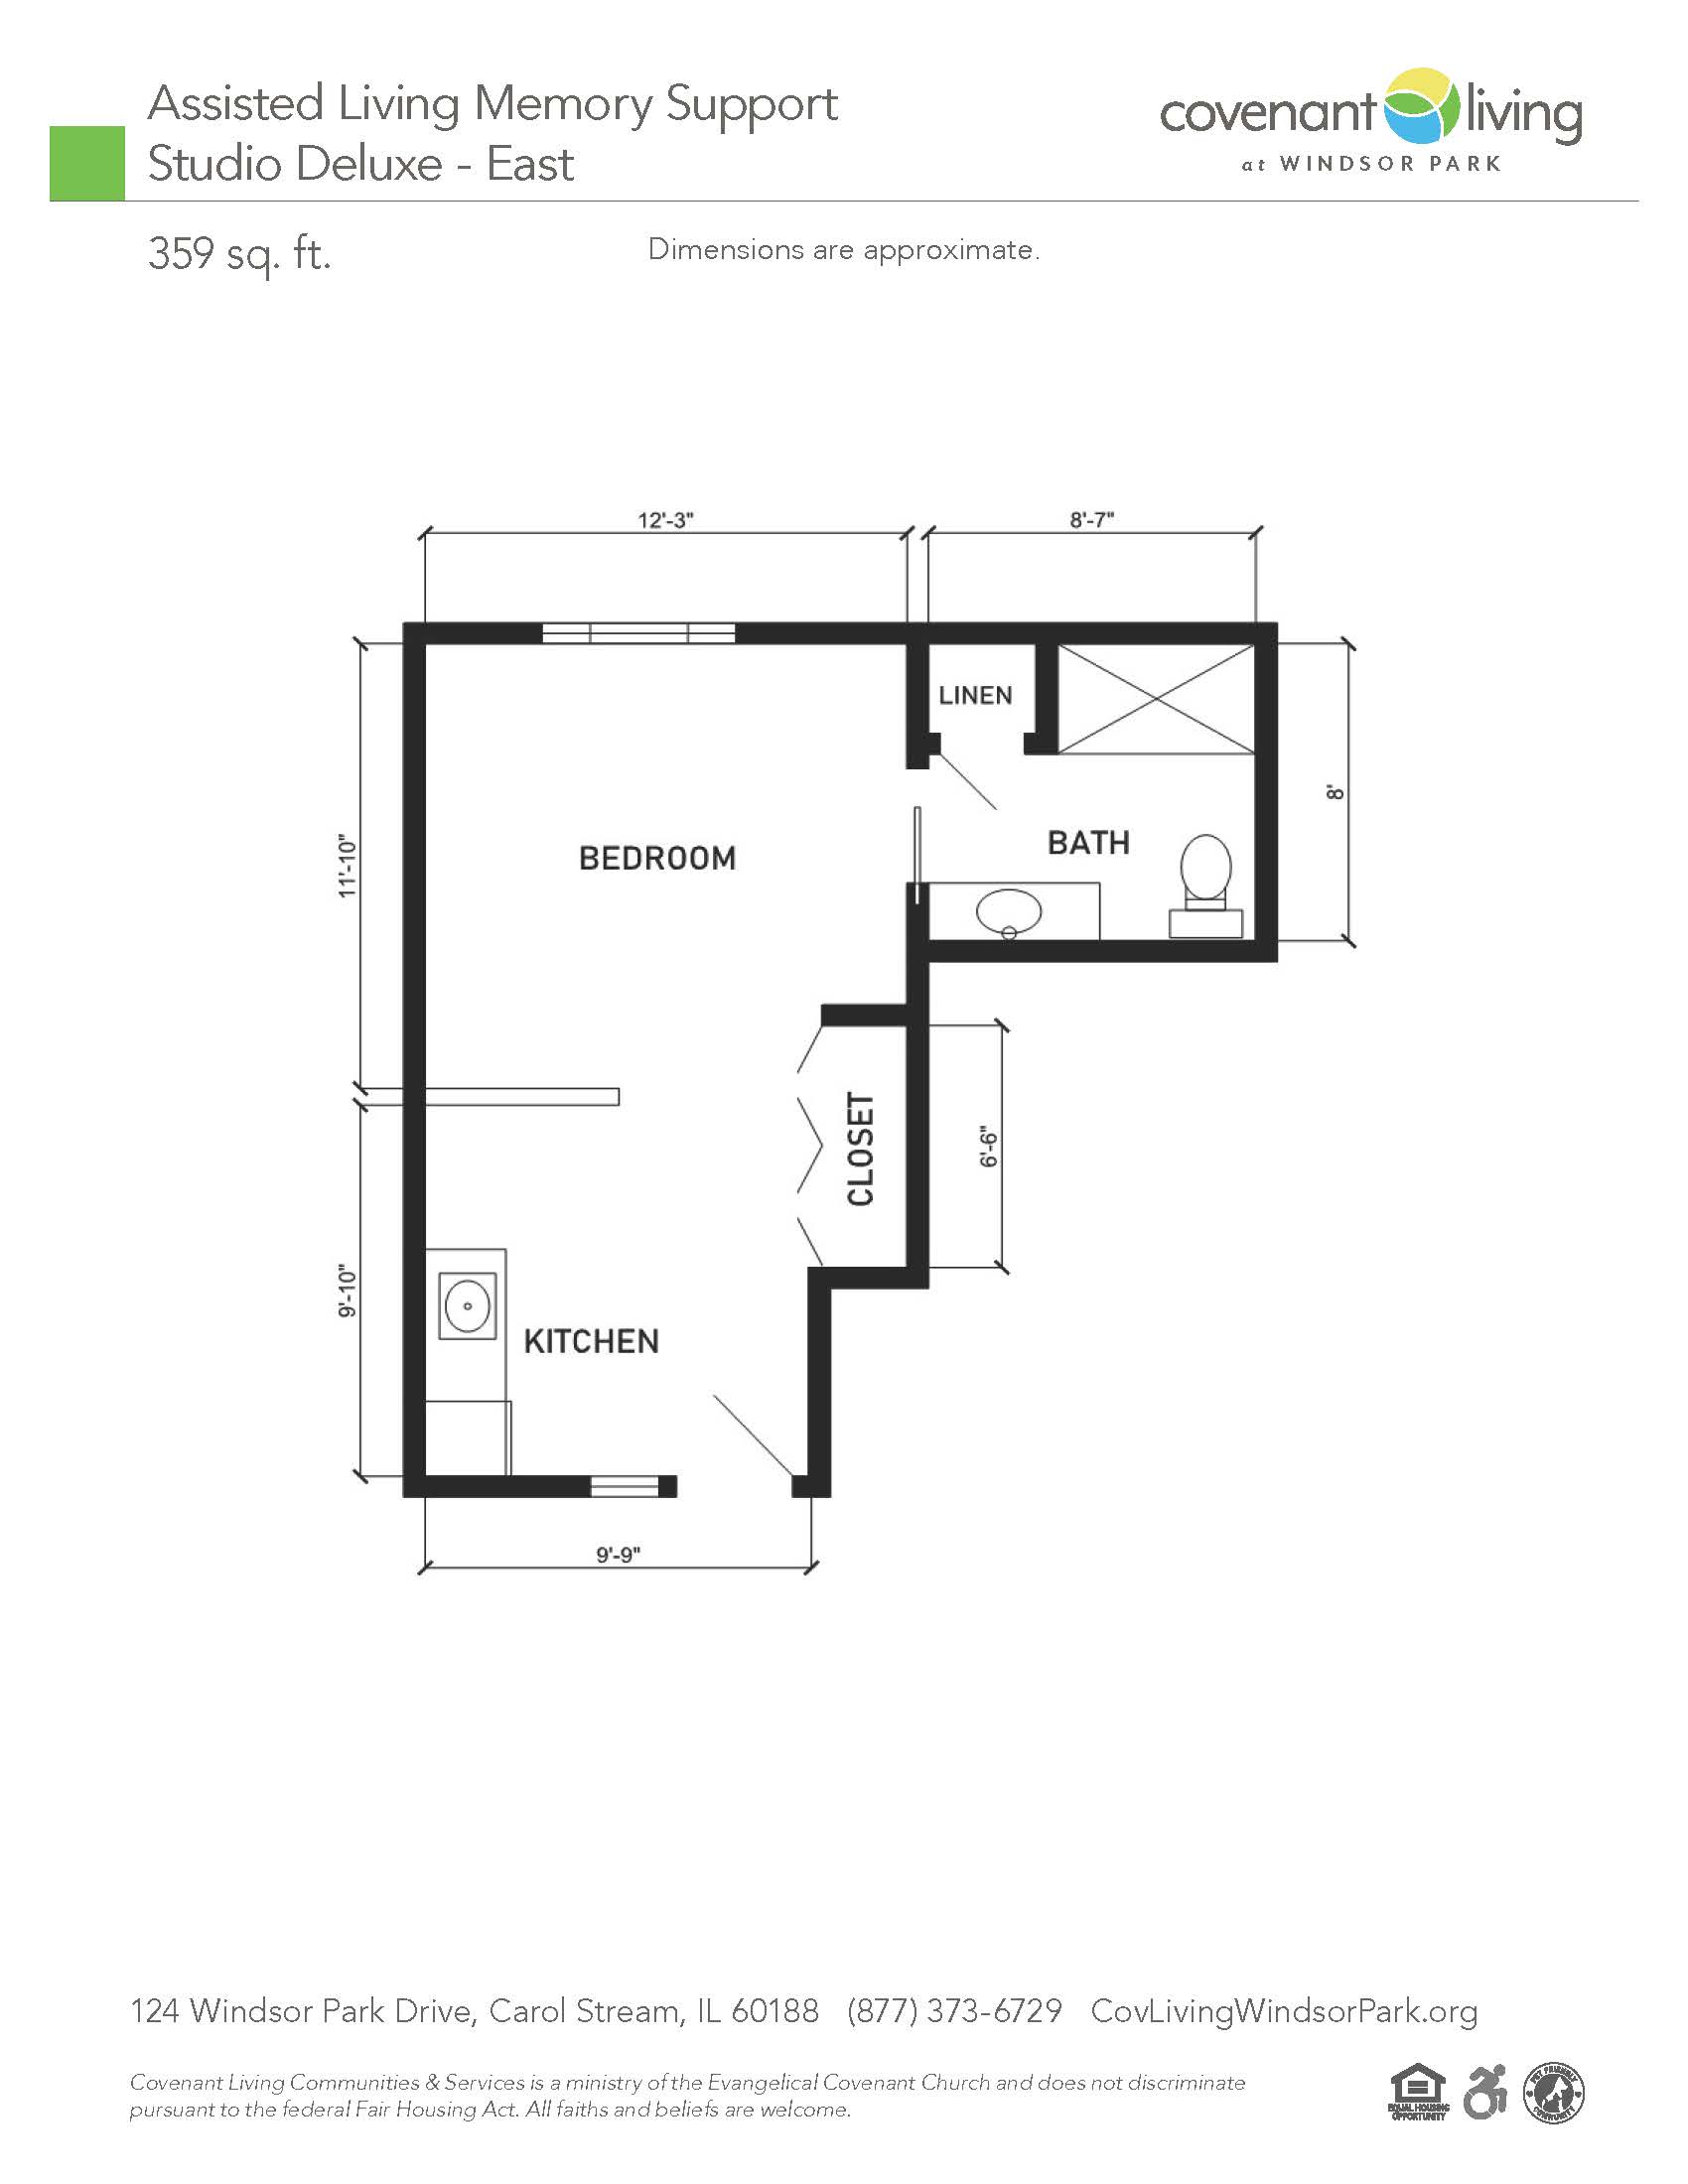 Alms studio floor plan